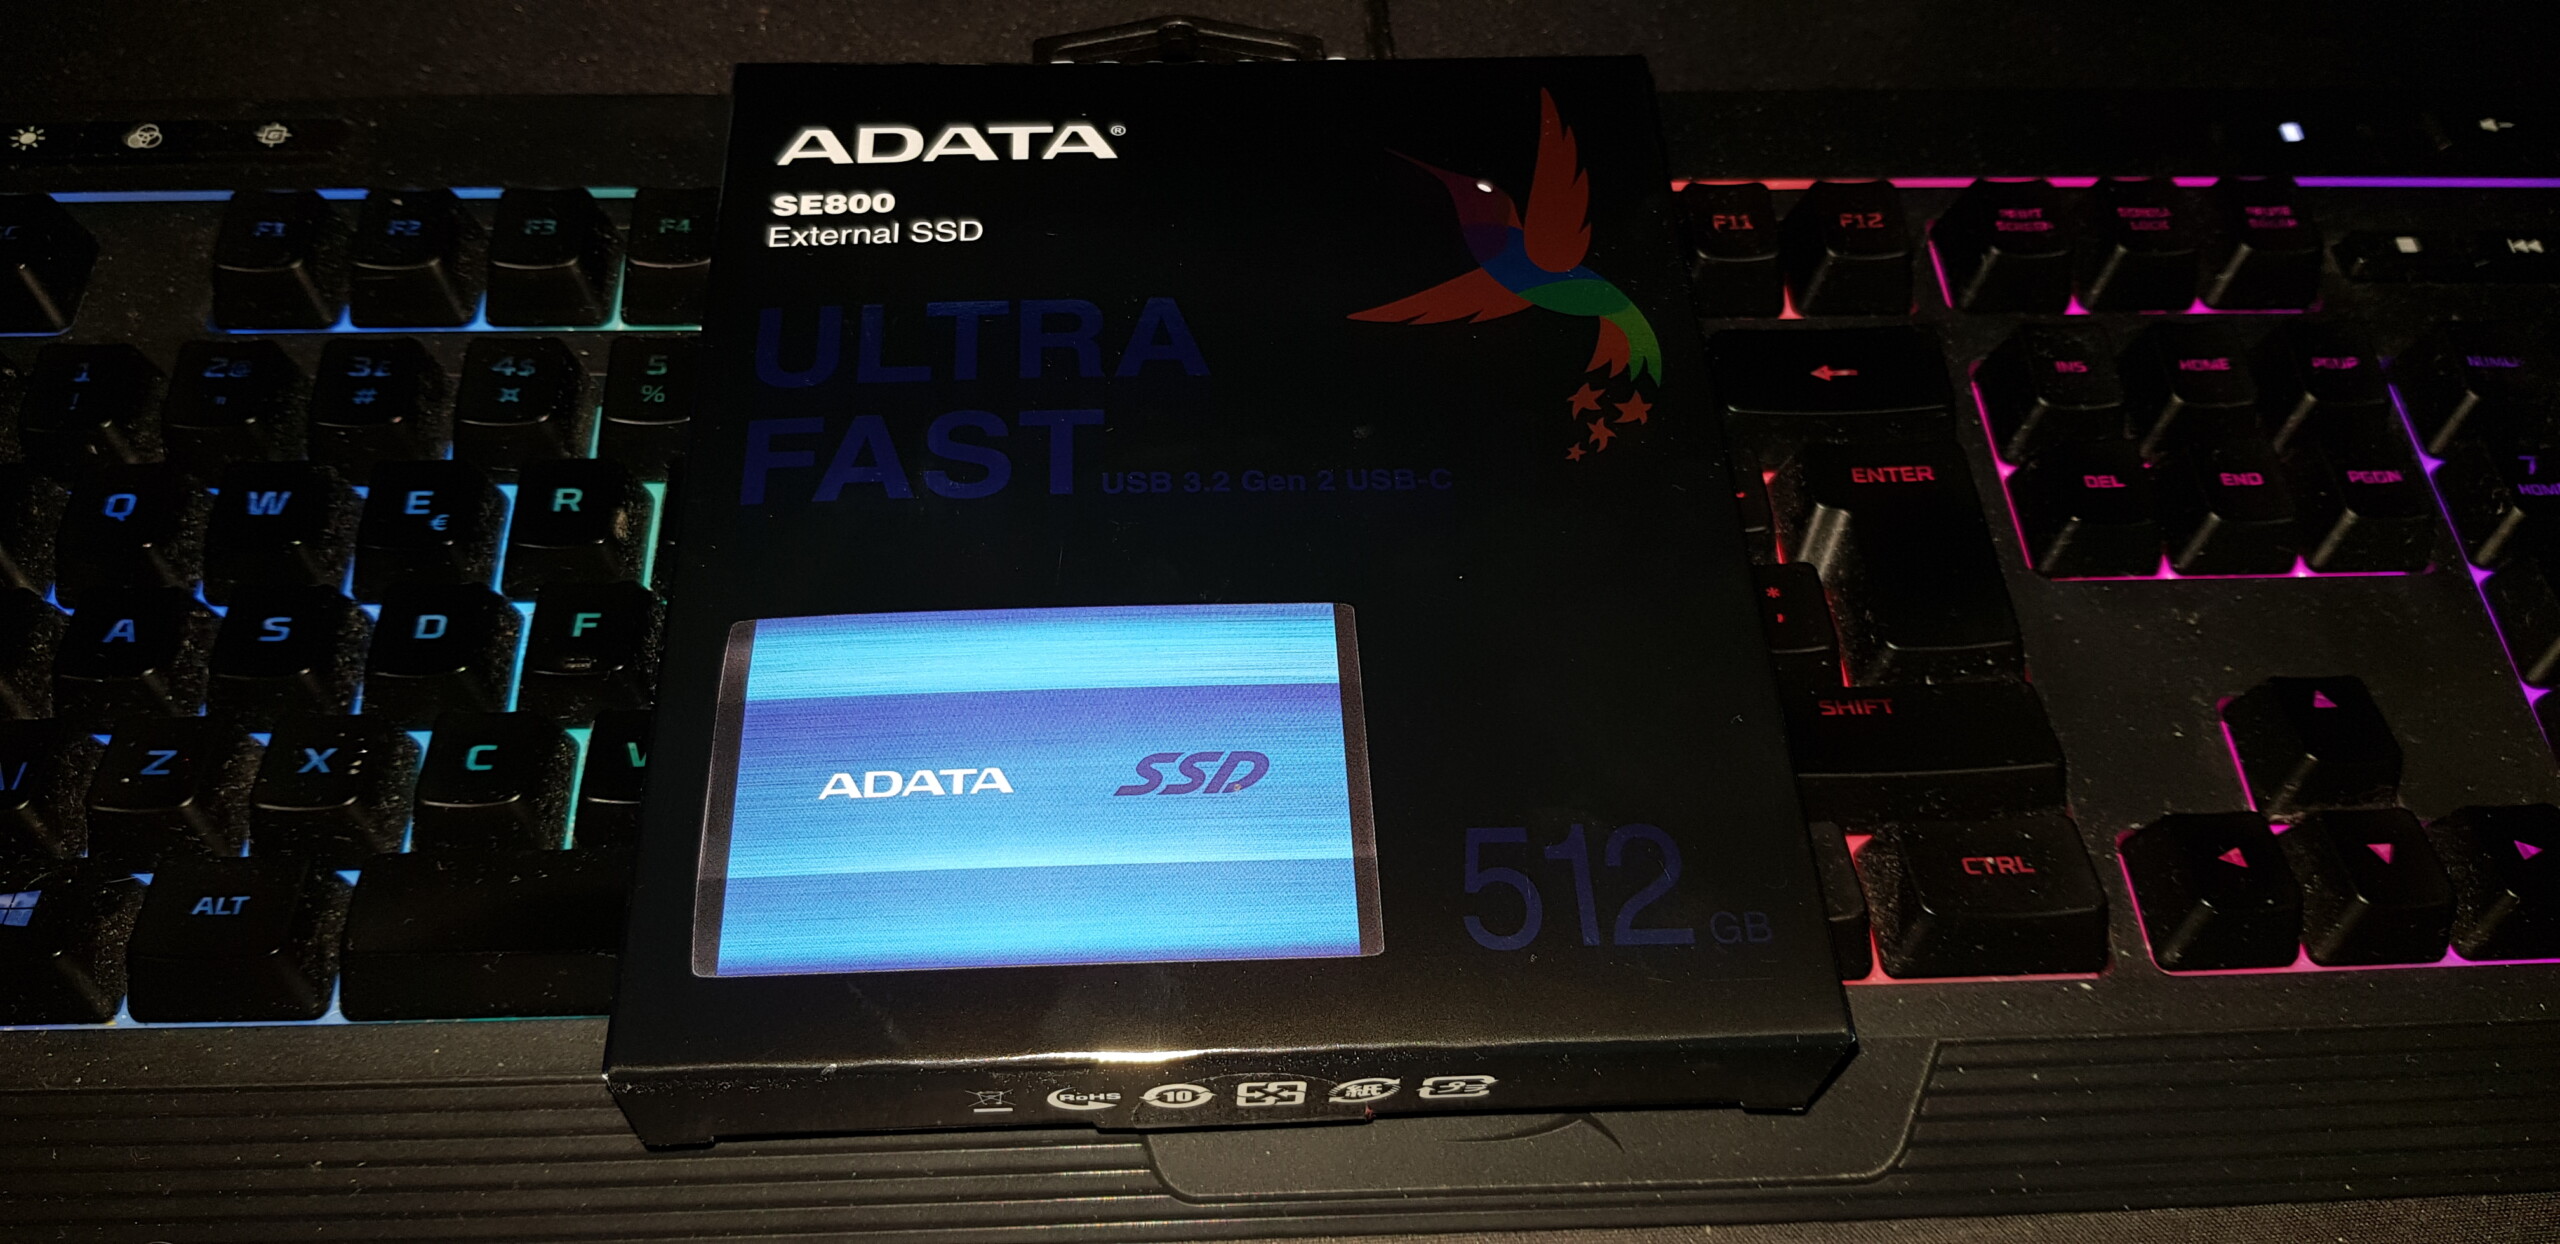 JULEGAVETIPS: ADATA SE800 SSD – Liten, men stor! Julegave